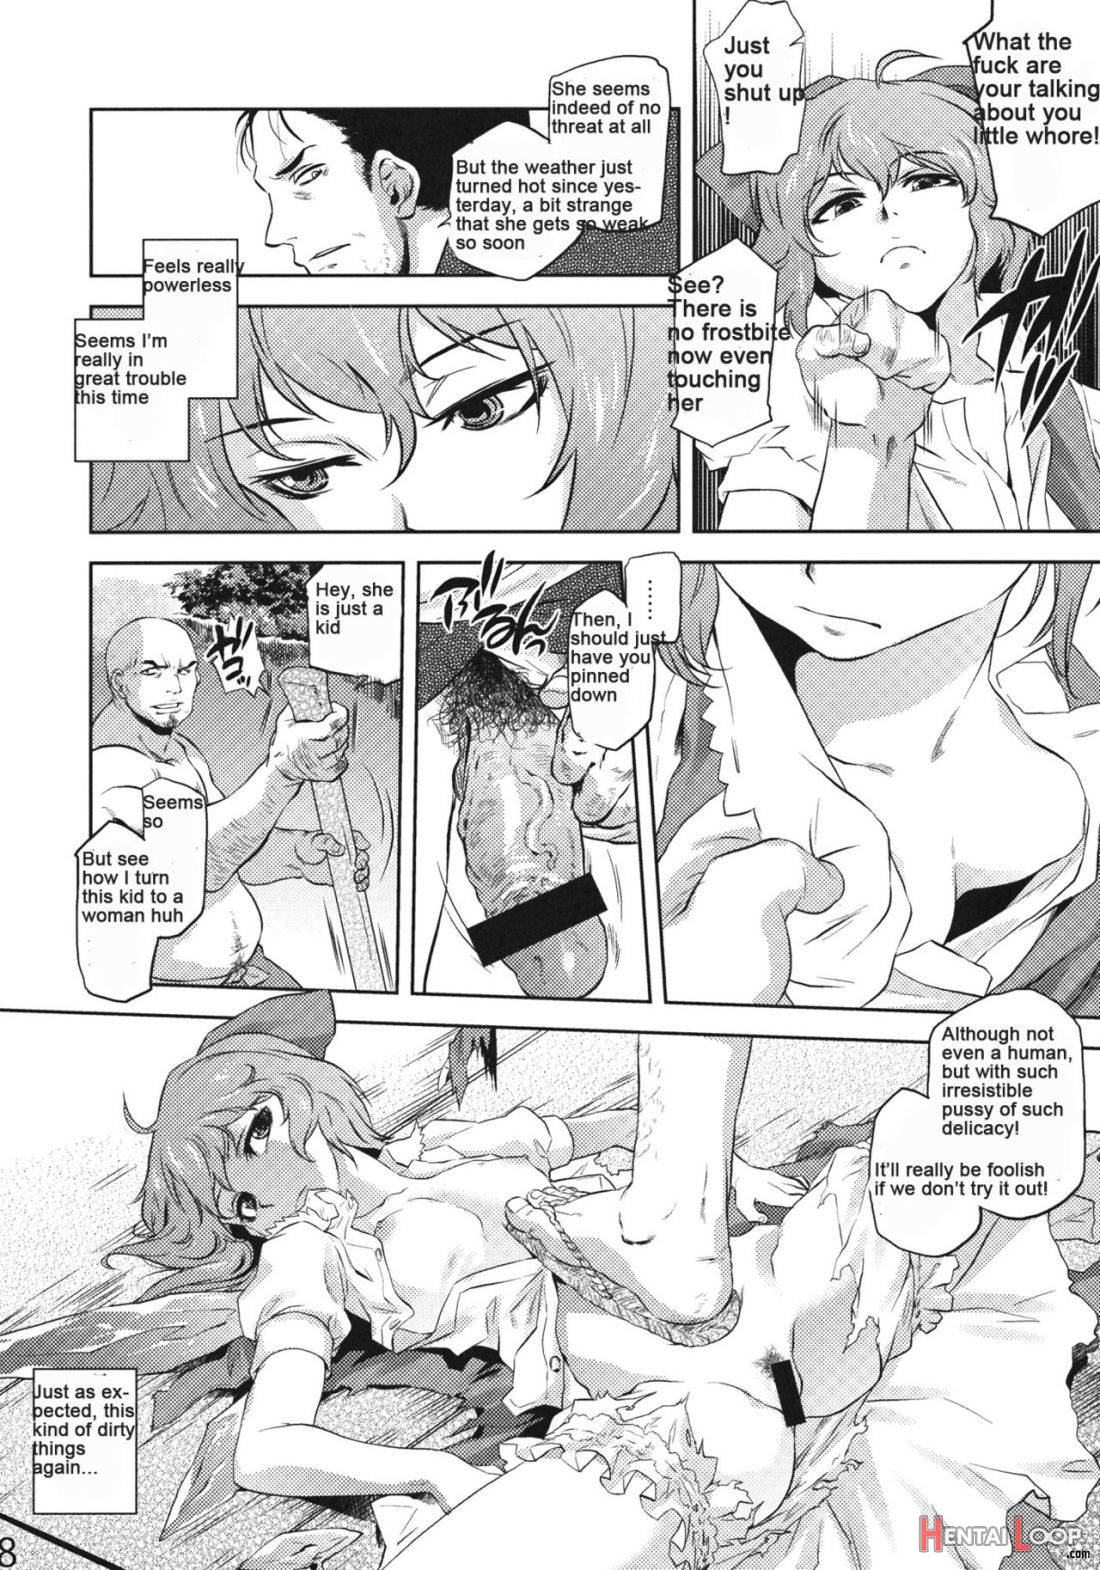 Sekka no Sho page 5